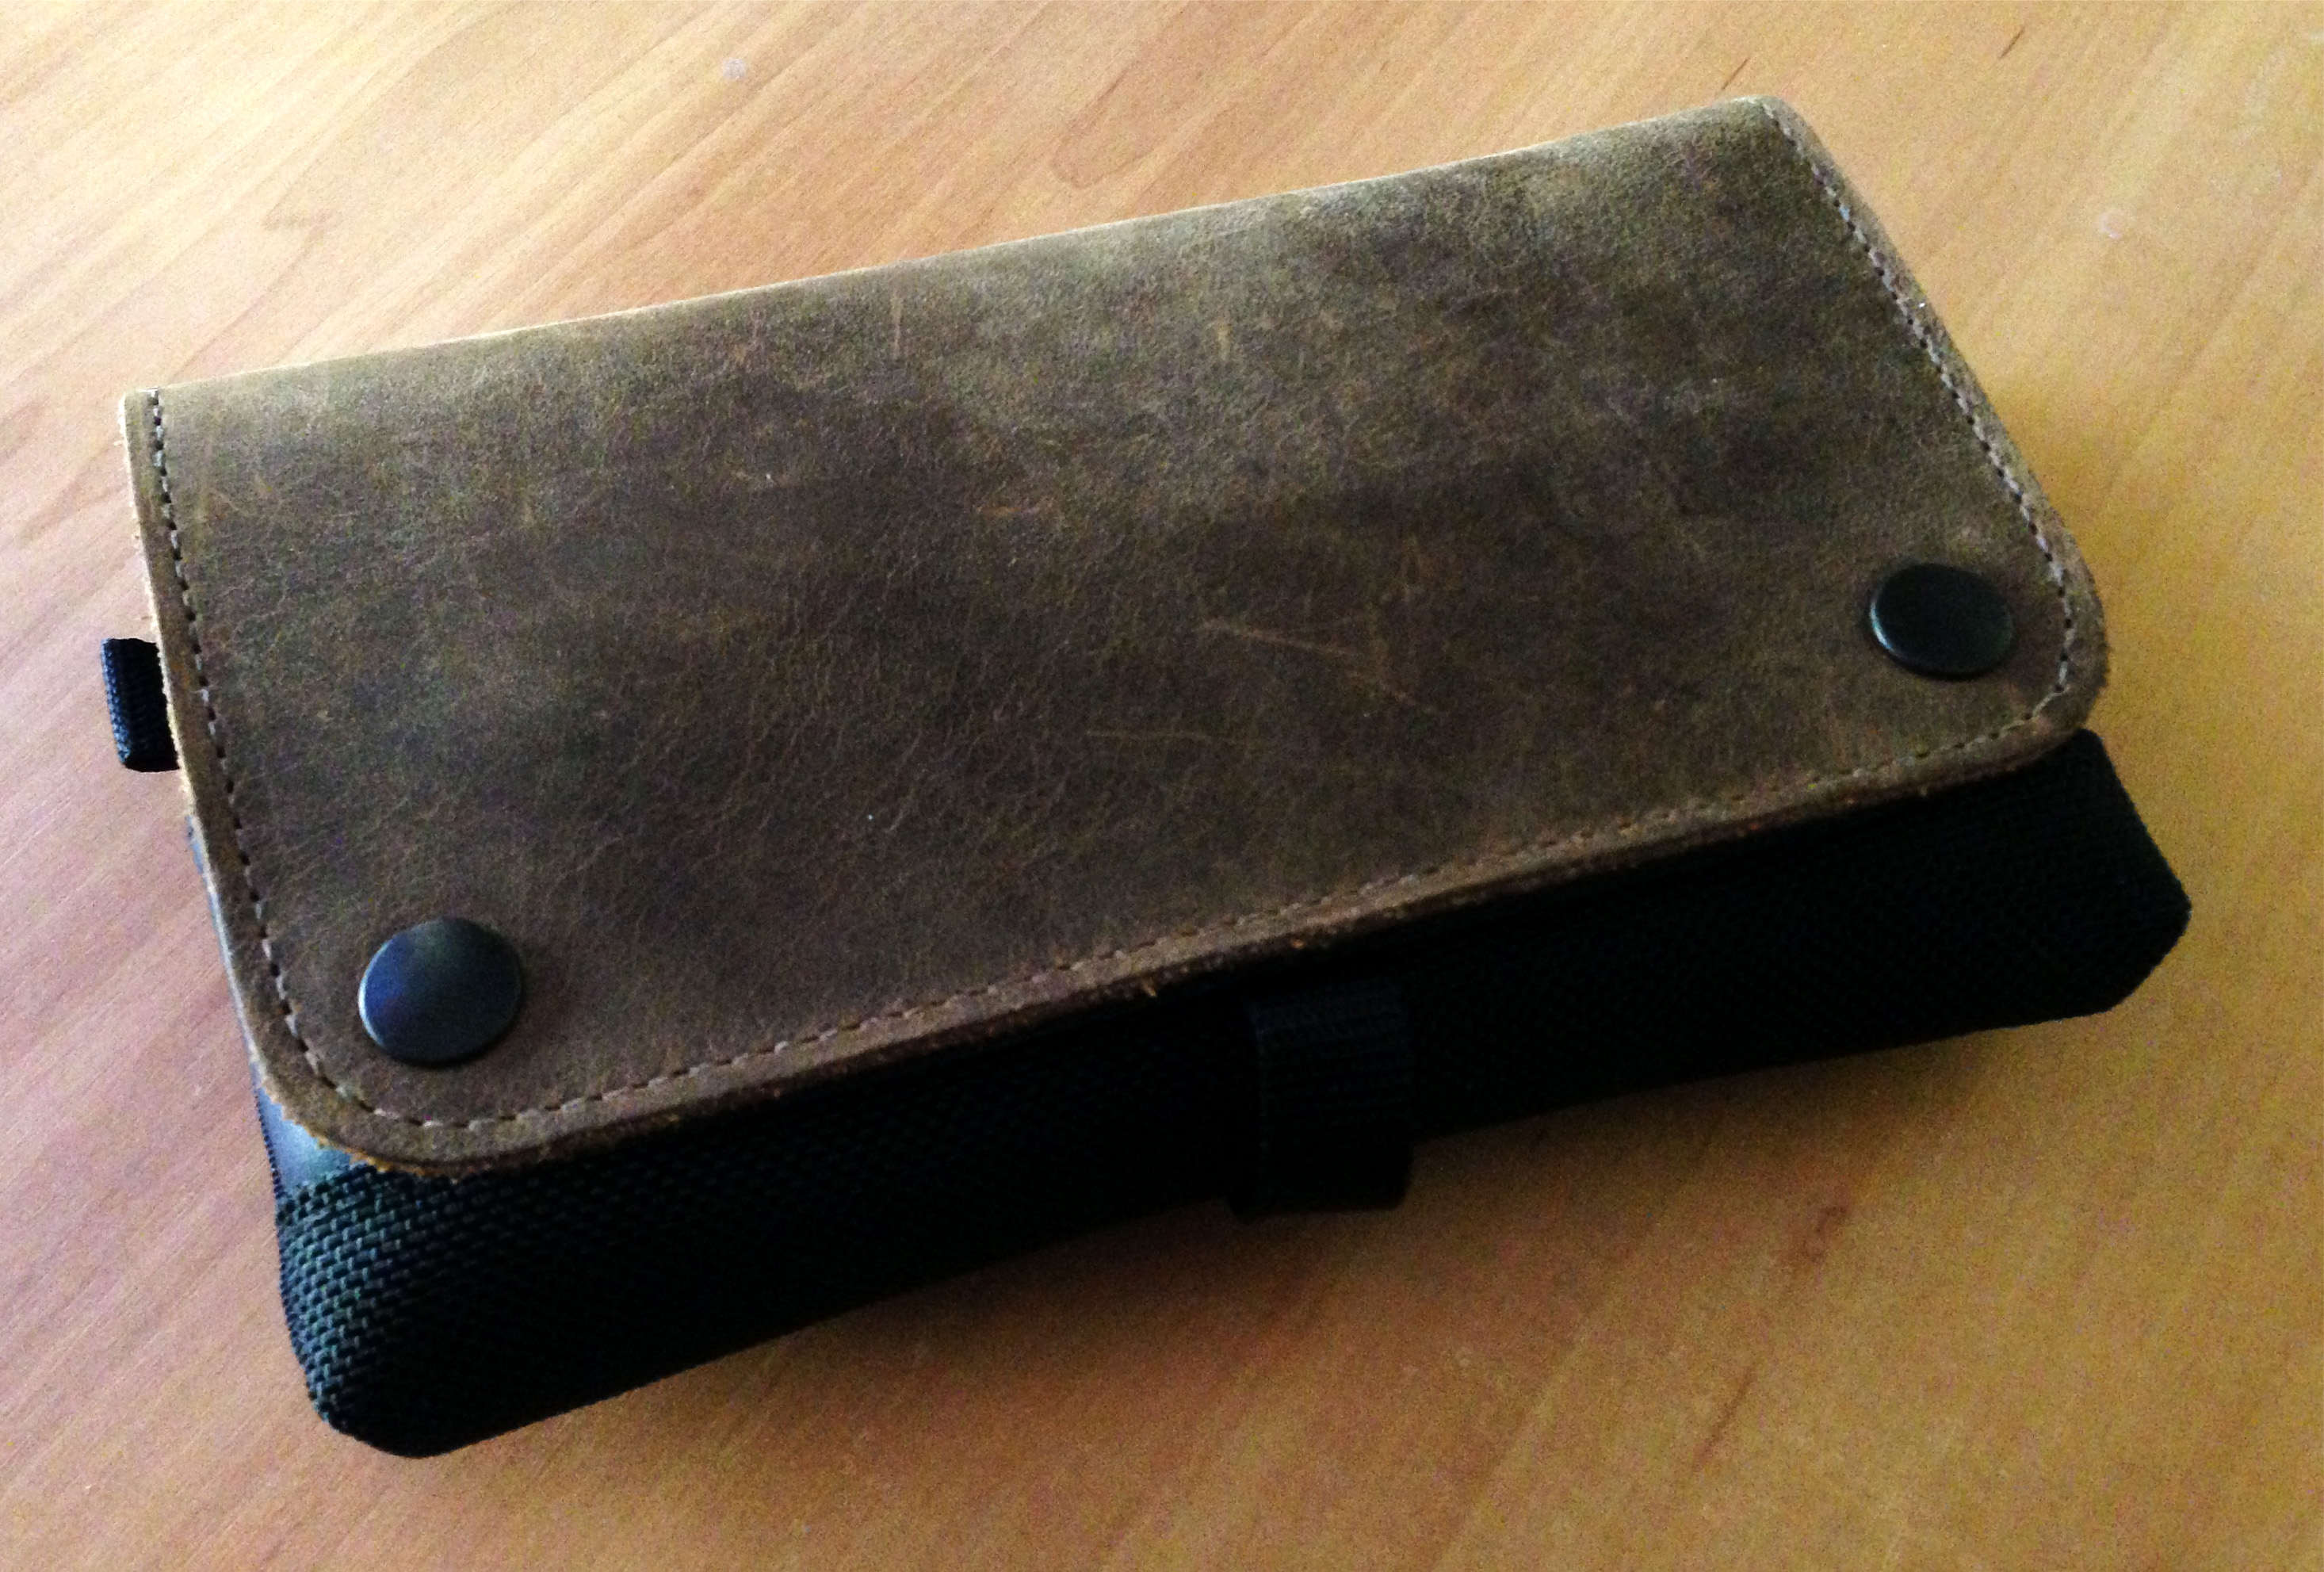 bånd Mundskyl Handel The best 3DS XL Carry Case | Tim Oliver